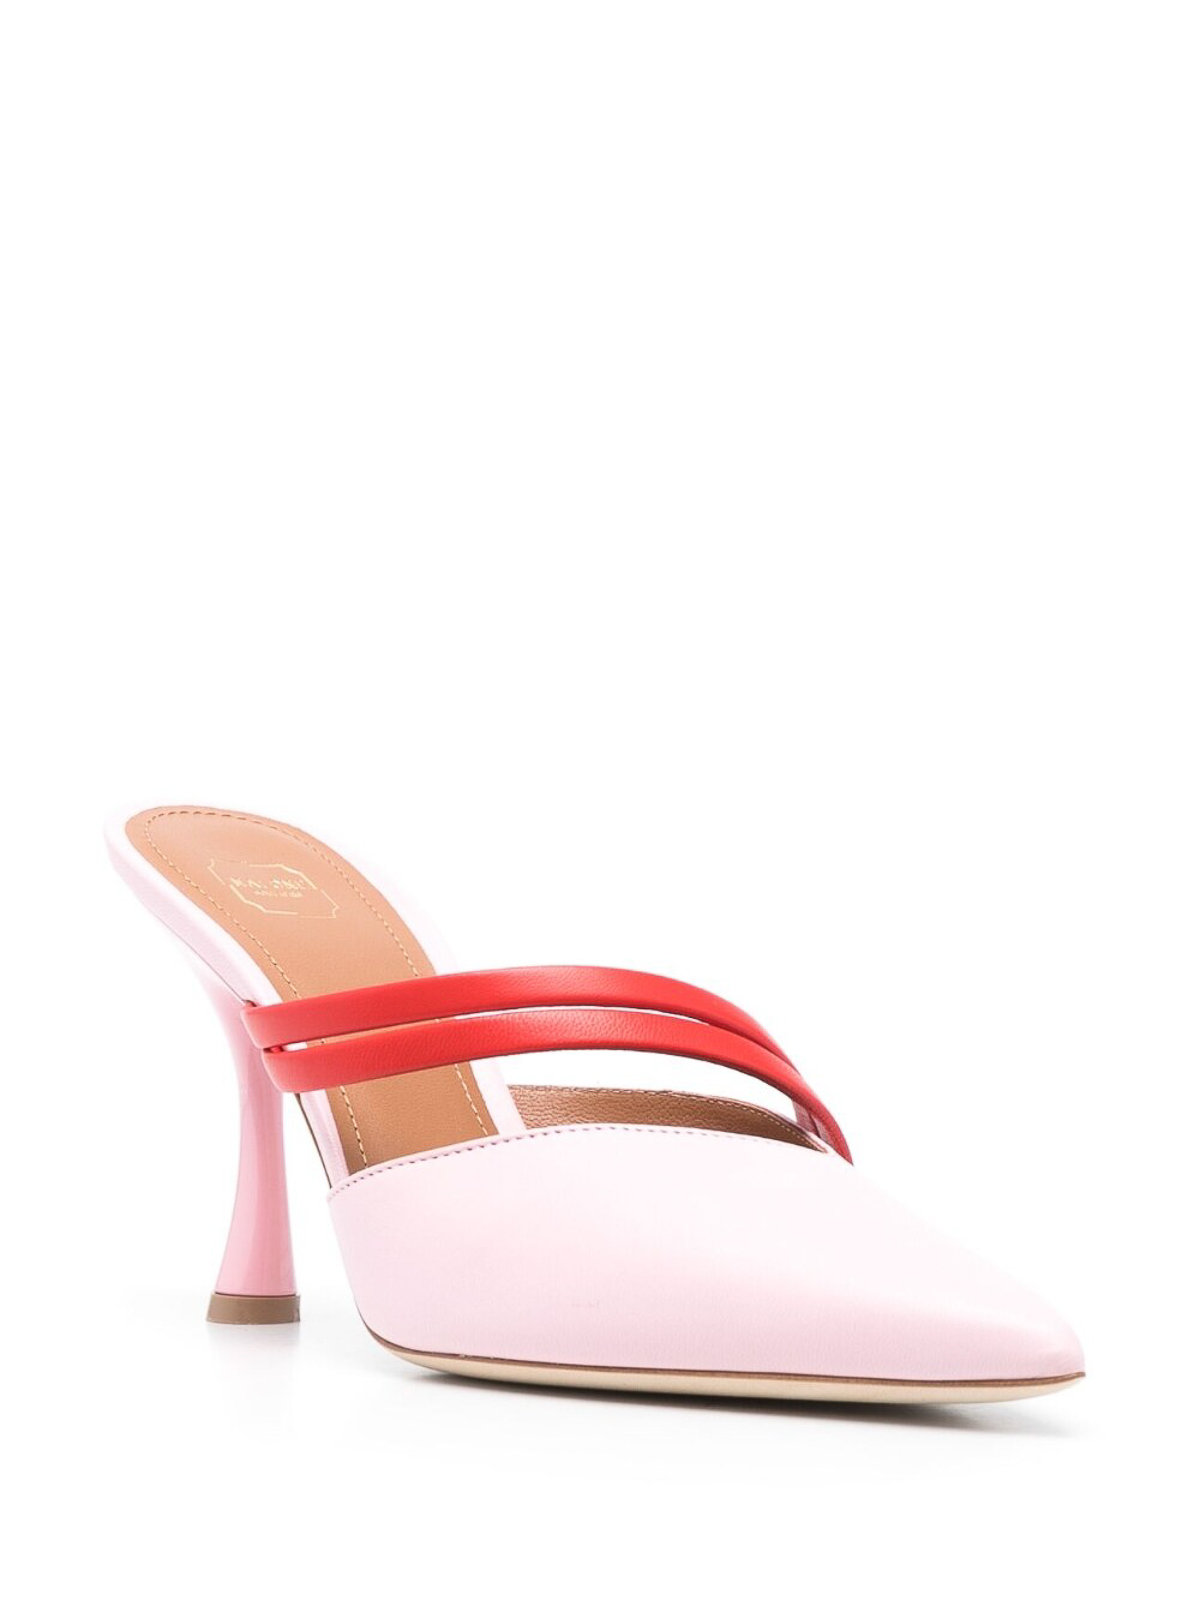 Shop Malone Souliers Zapatos De Salón - Tia 90 In Pink